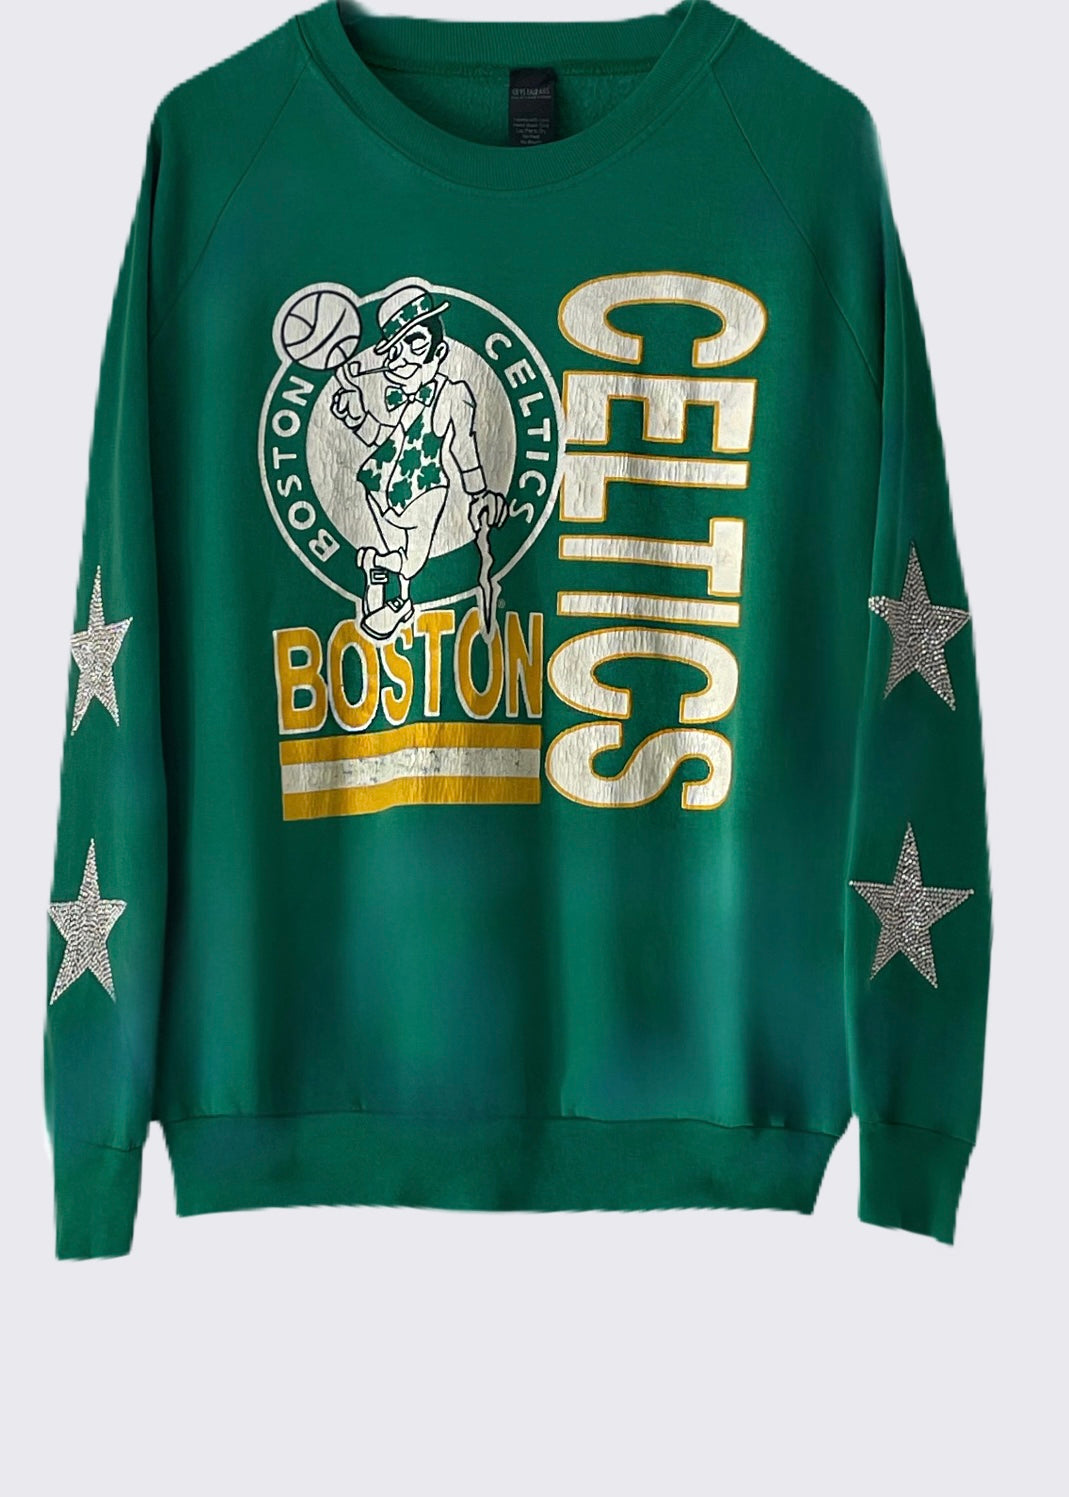 Vintage Celtics Sweatshirt 